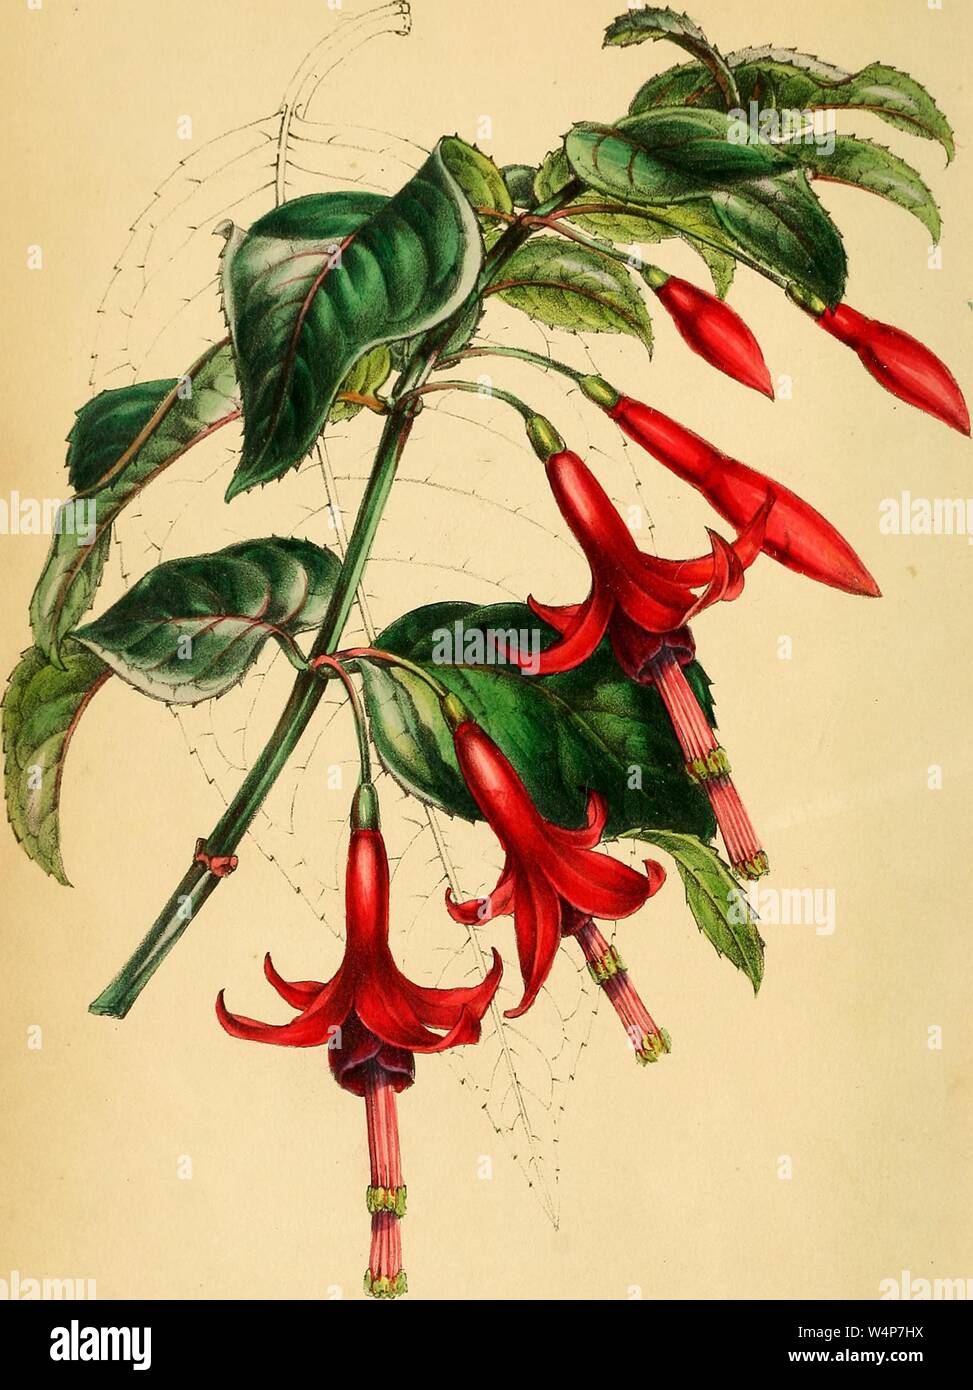 Il disegno inciso dello stelo-radicamento Fuchsia (Fuchsia radicans), dal libro "Paxton della rivista di botanica' da Sir Joseph Paxton, 1842. La cortesia Internet Archive. () Foto Stock